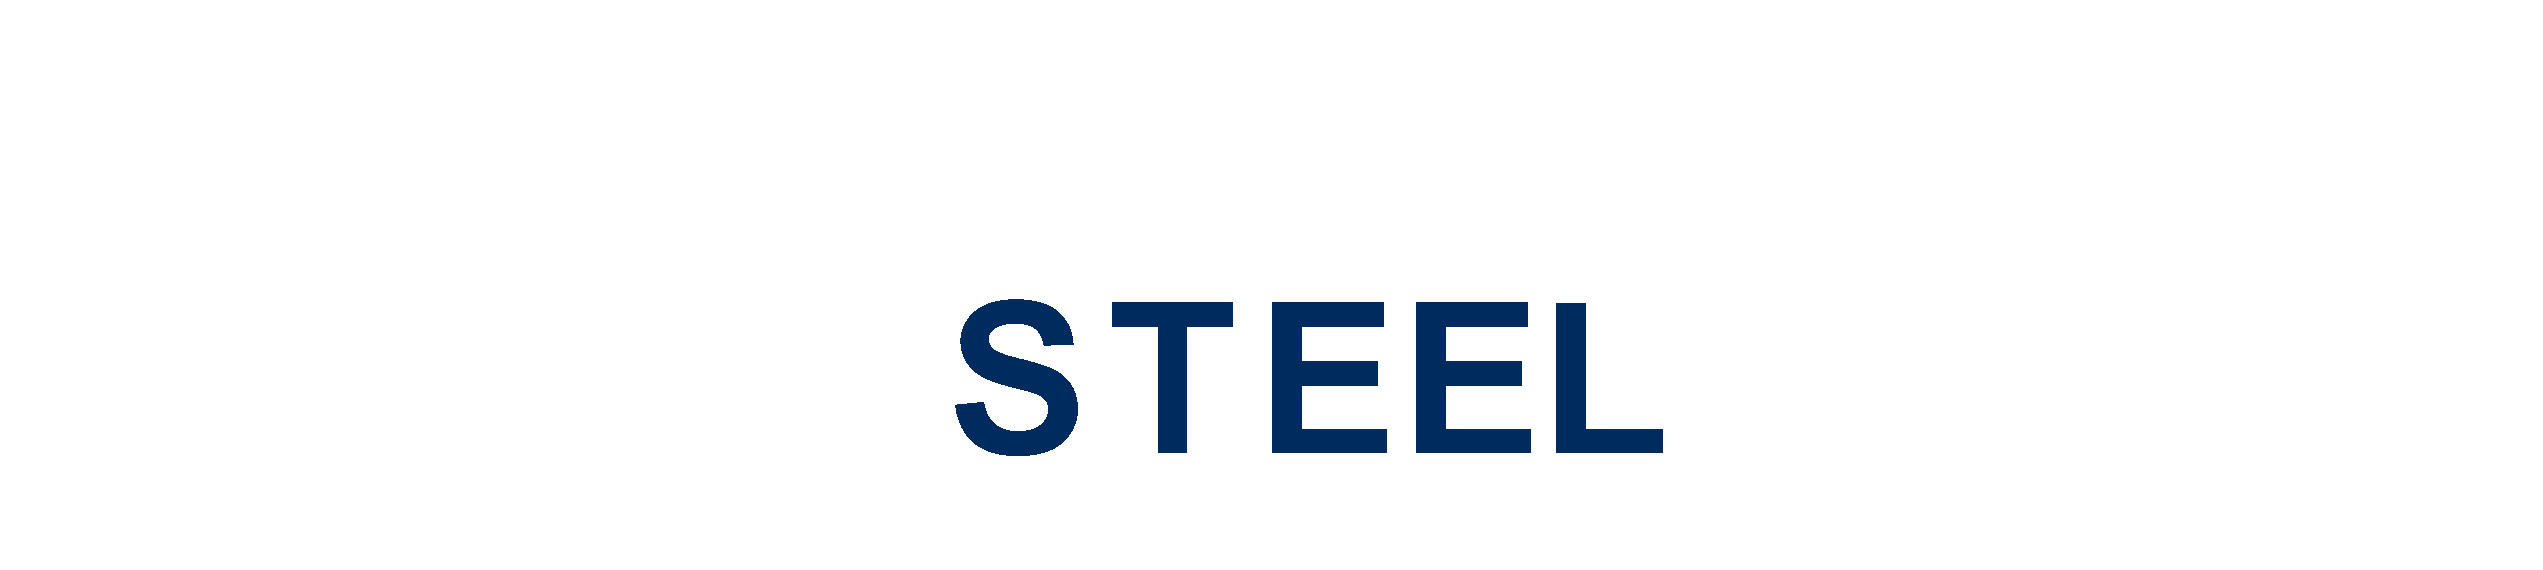 Australian Steel